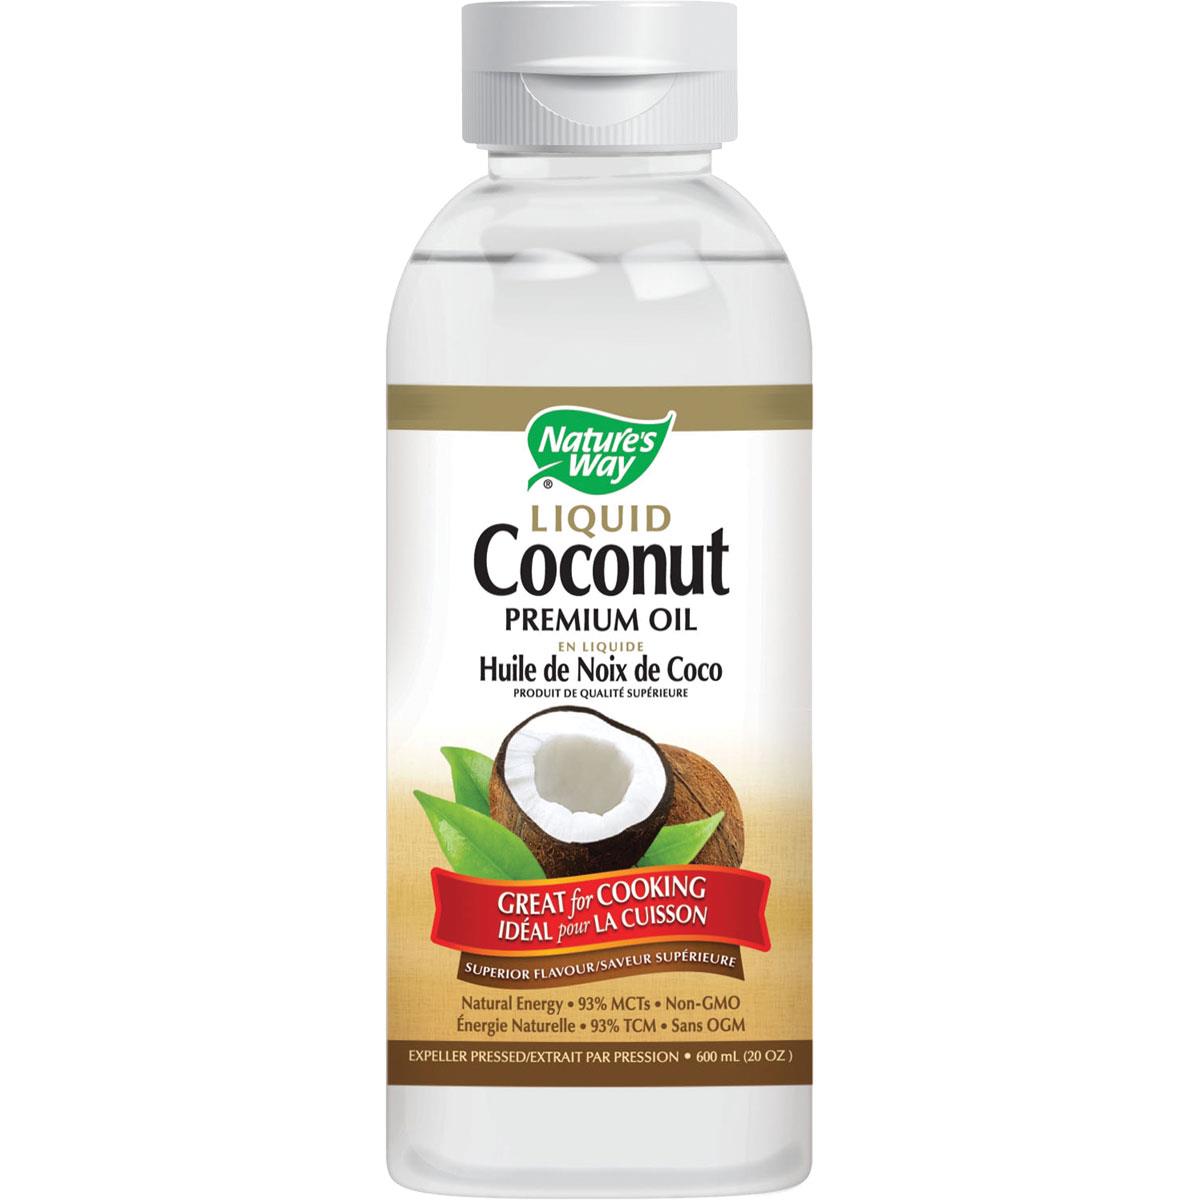 Nature's Way Coconut Oil Premium Liquid, 600ml